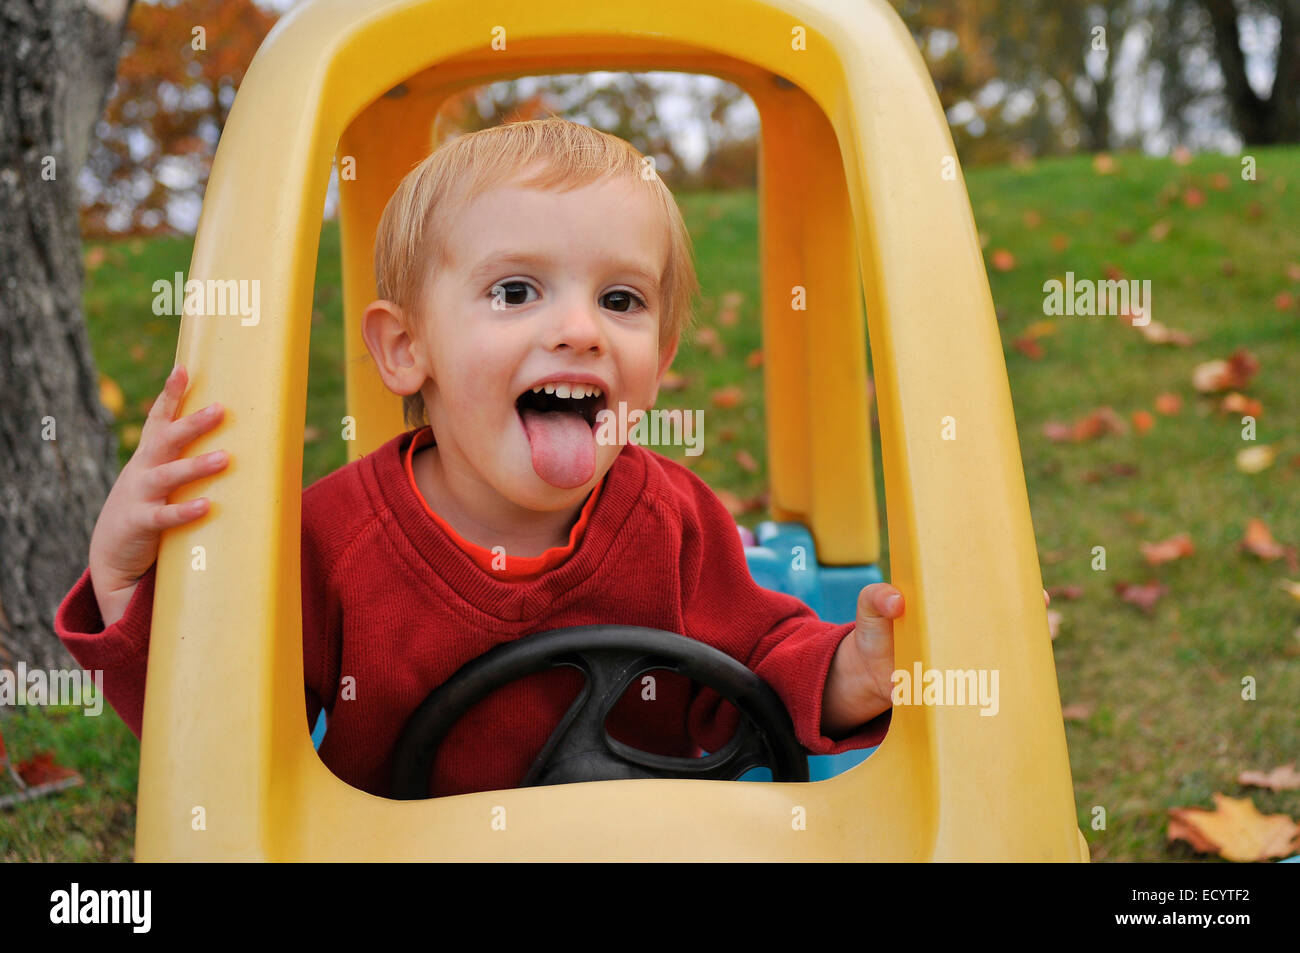 Ein zwei-Jahr-alte junge macht ein lustiges Gesicht während des Spielens in seinem Spielzeugauto an einem Herbsttag. Stockfoto